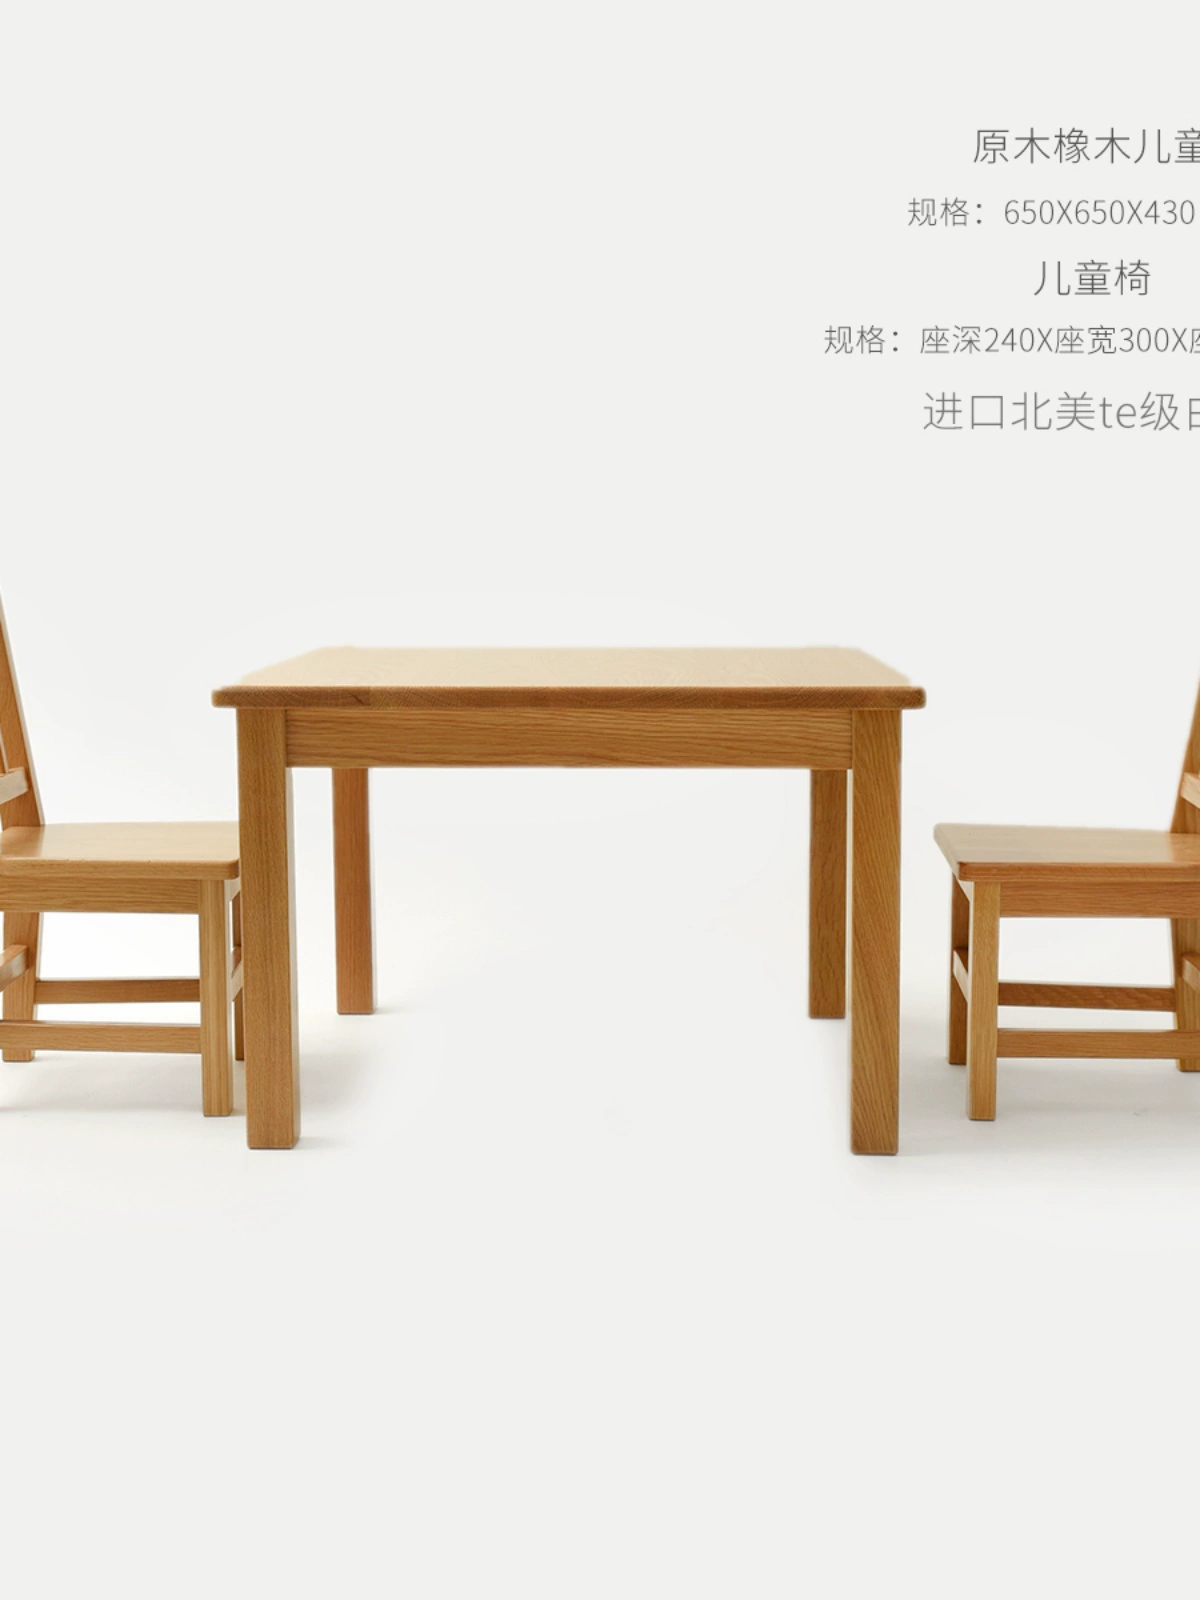 實木兒童桌椅套裝 橡木櫸木 手工桌 小方桌 餐桌椅三件套